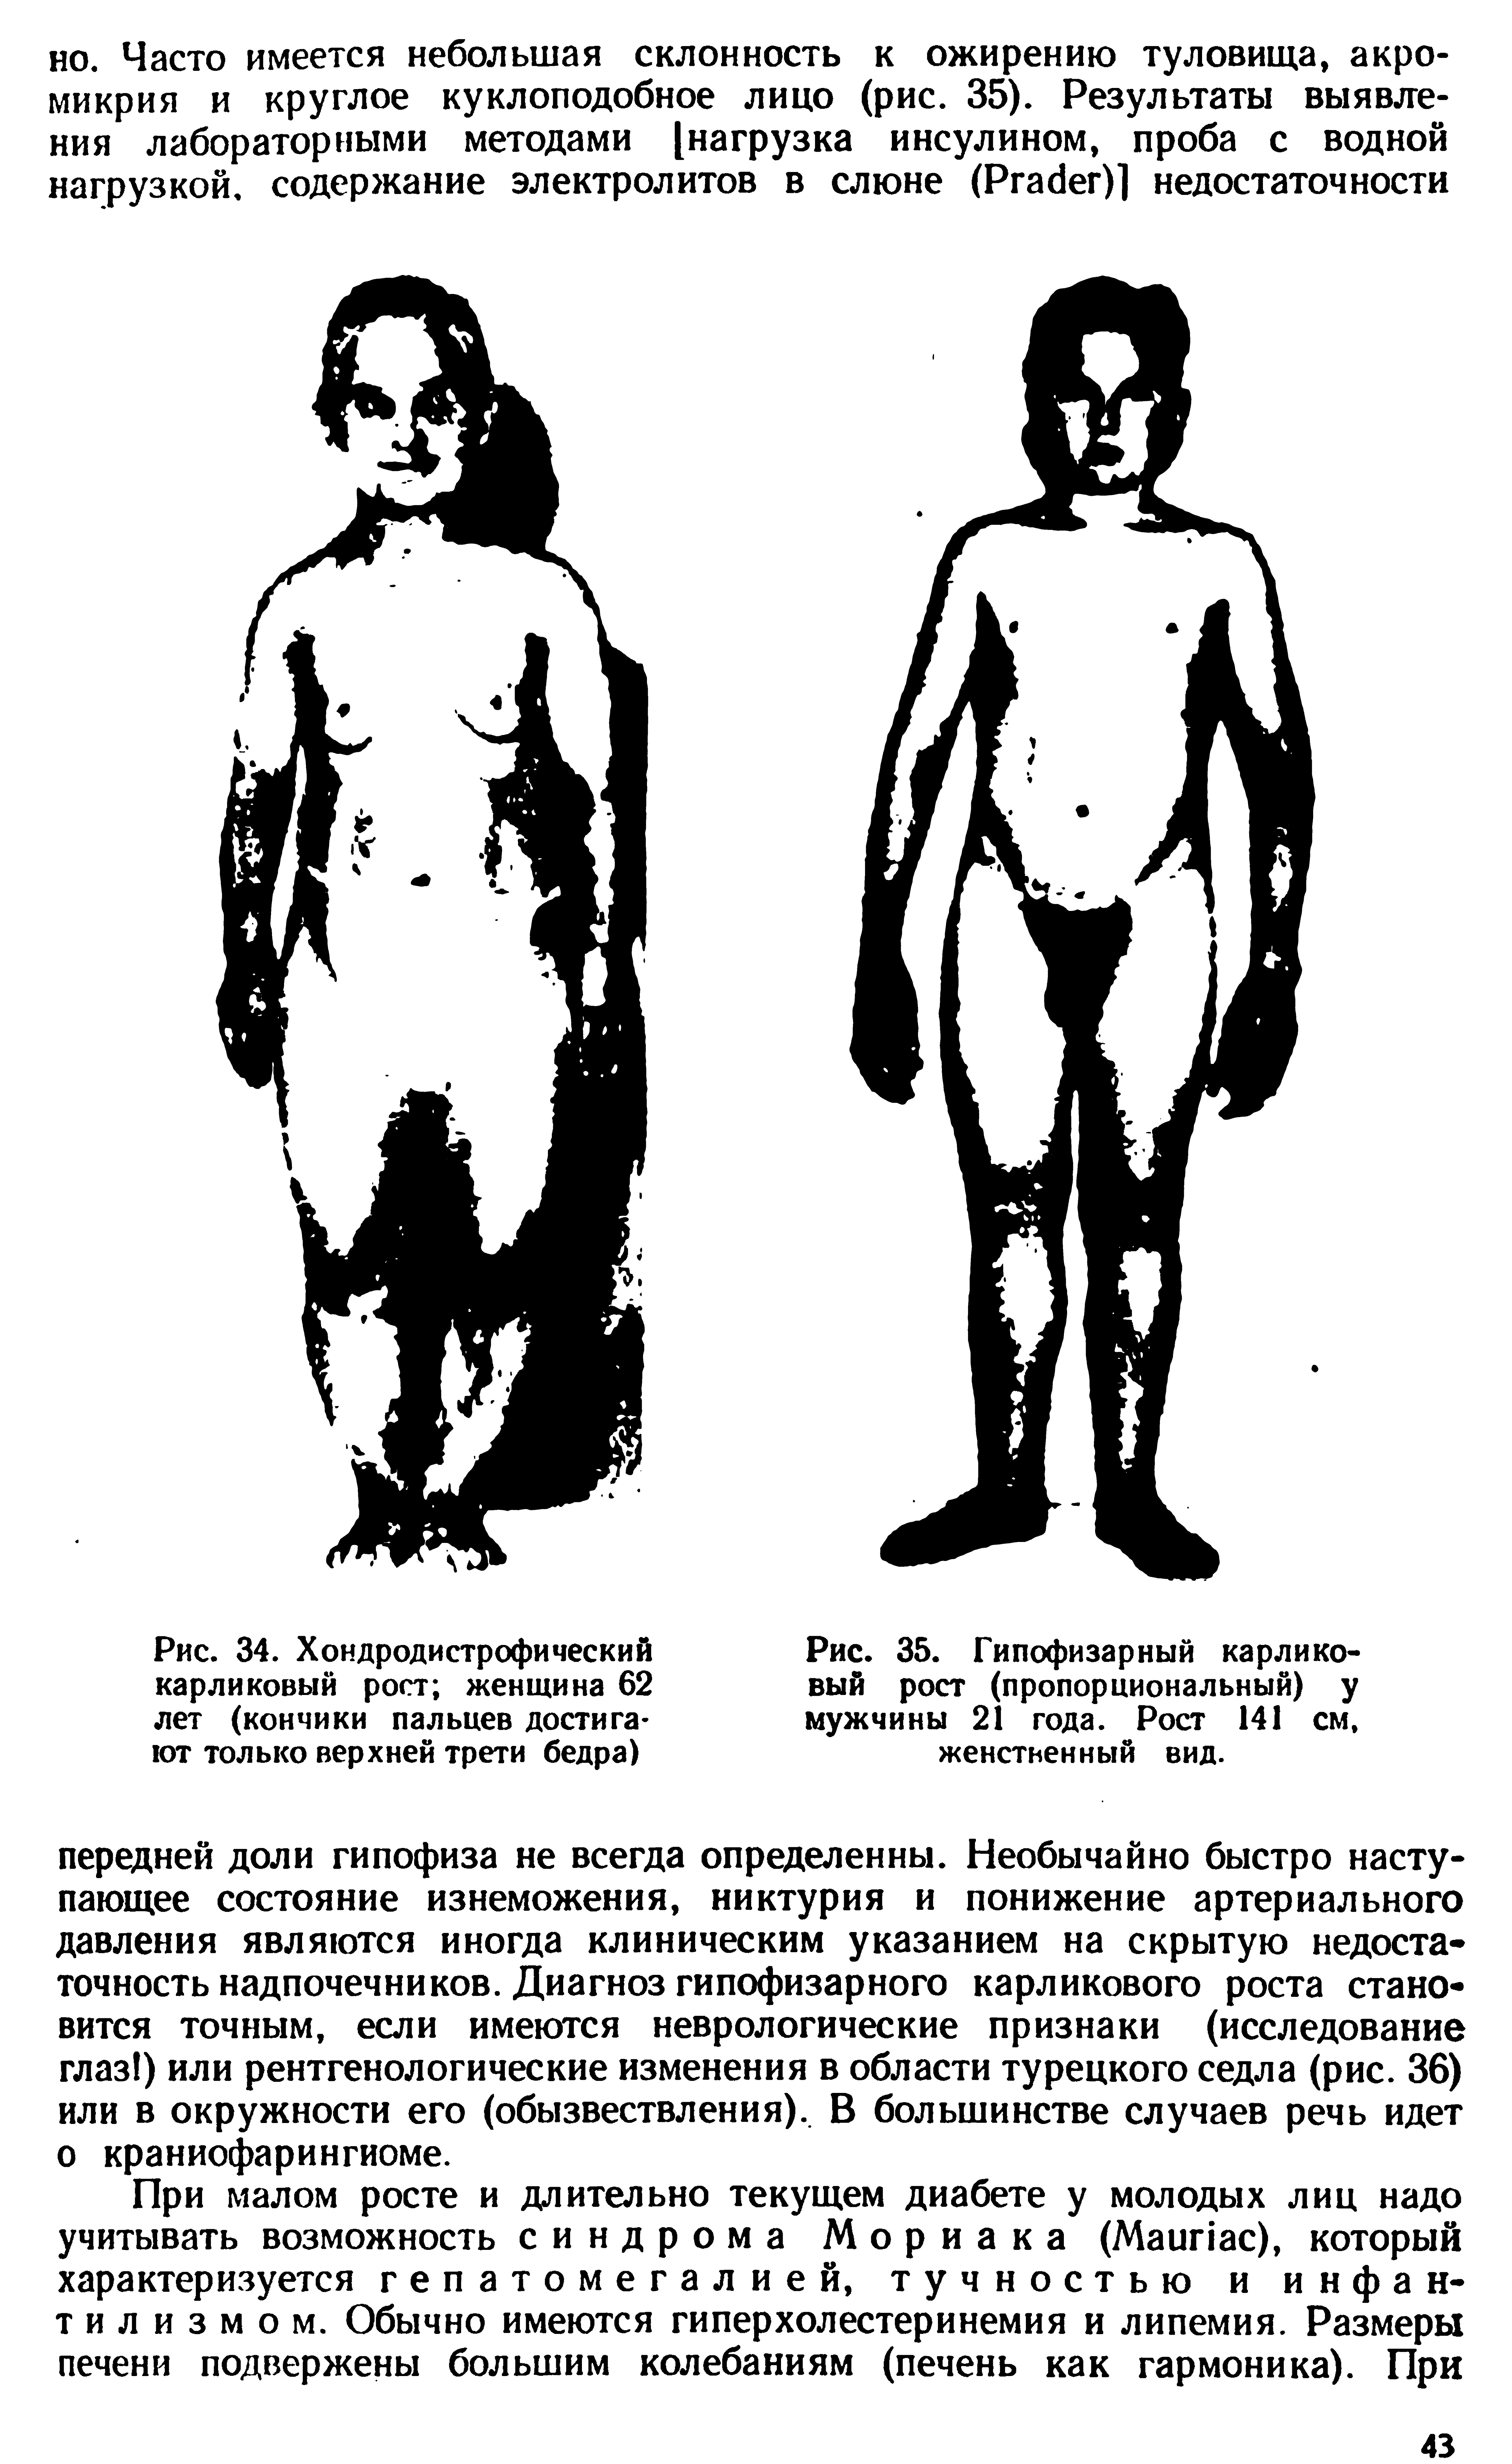 Рис. 35. Гипофизарный карликовый рост (пропорциональный) у мужчины 21 года. Рост 141 см, женственный вид.